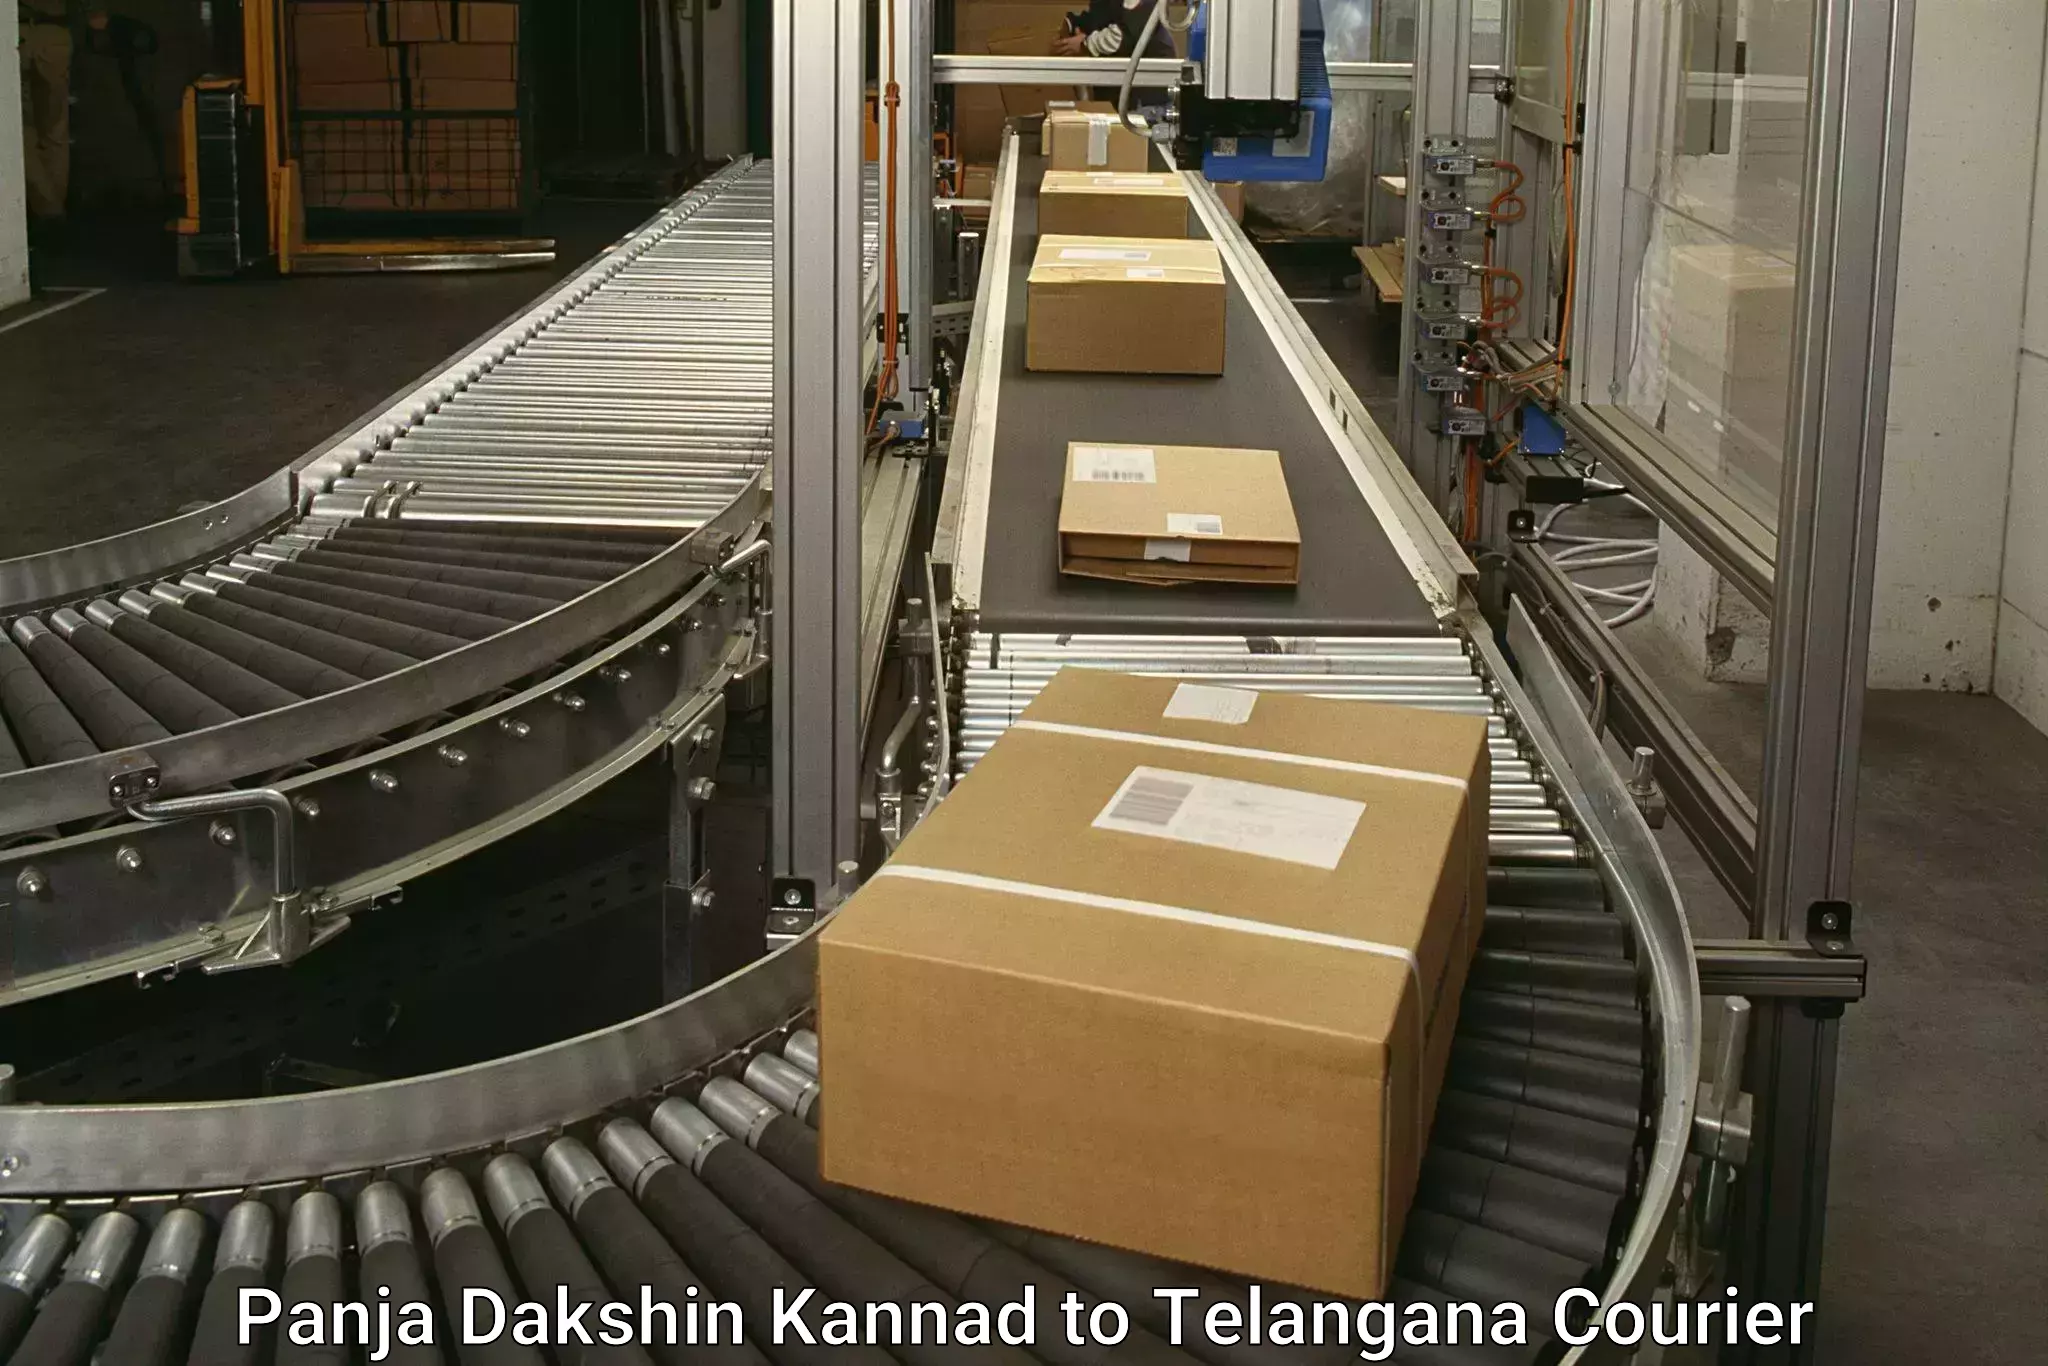 Shipping and handling Panja Dakshin Kannad to Mudigonda